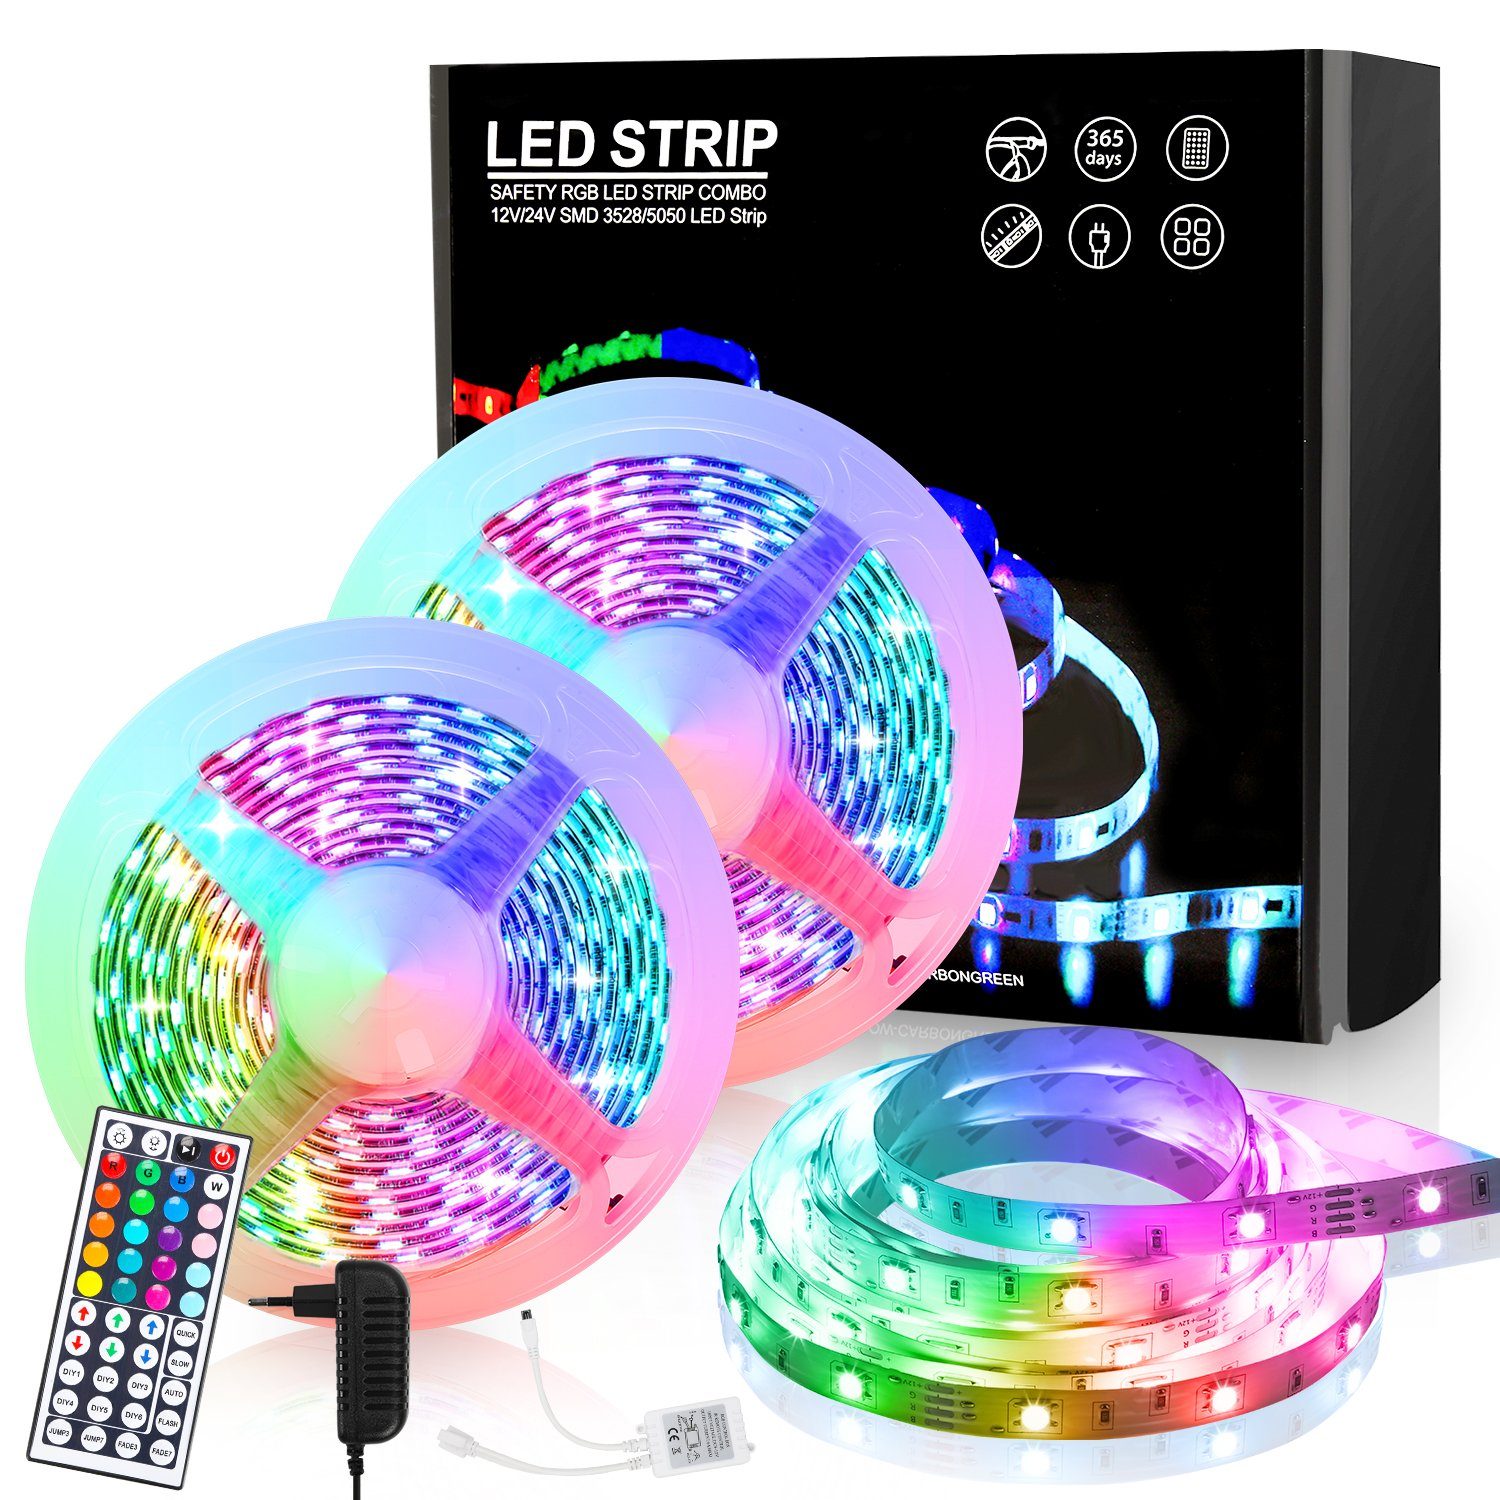 https://i.otto.de/i/otto/9e5647df-a2a9-446a-ad97-5e36a9a463b7/lospitch-led-stripe-led-streifen-stripe-led-strip-licht-band-lichterkette-leiste-leuchte-30-flammig.jpg?$formatz$